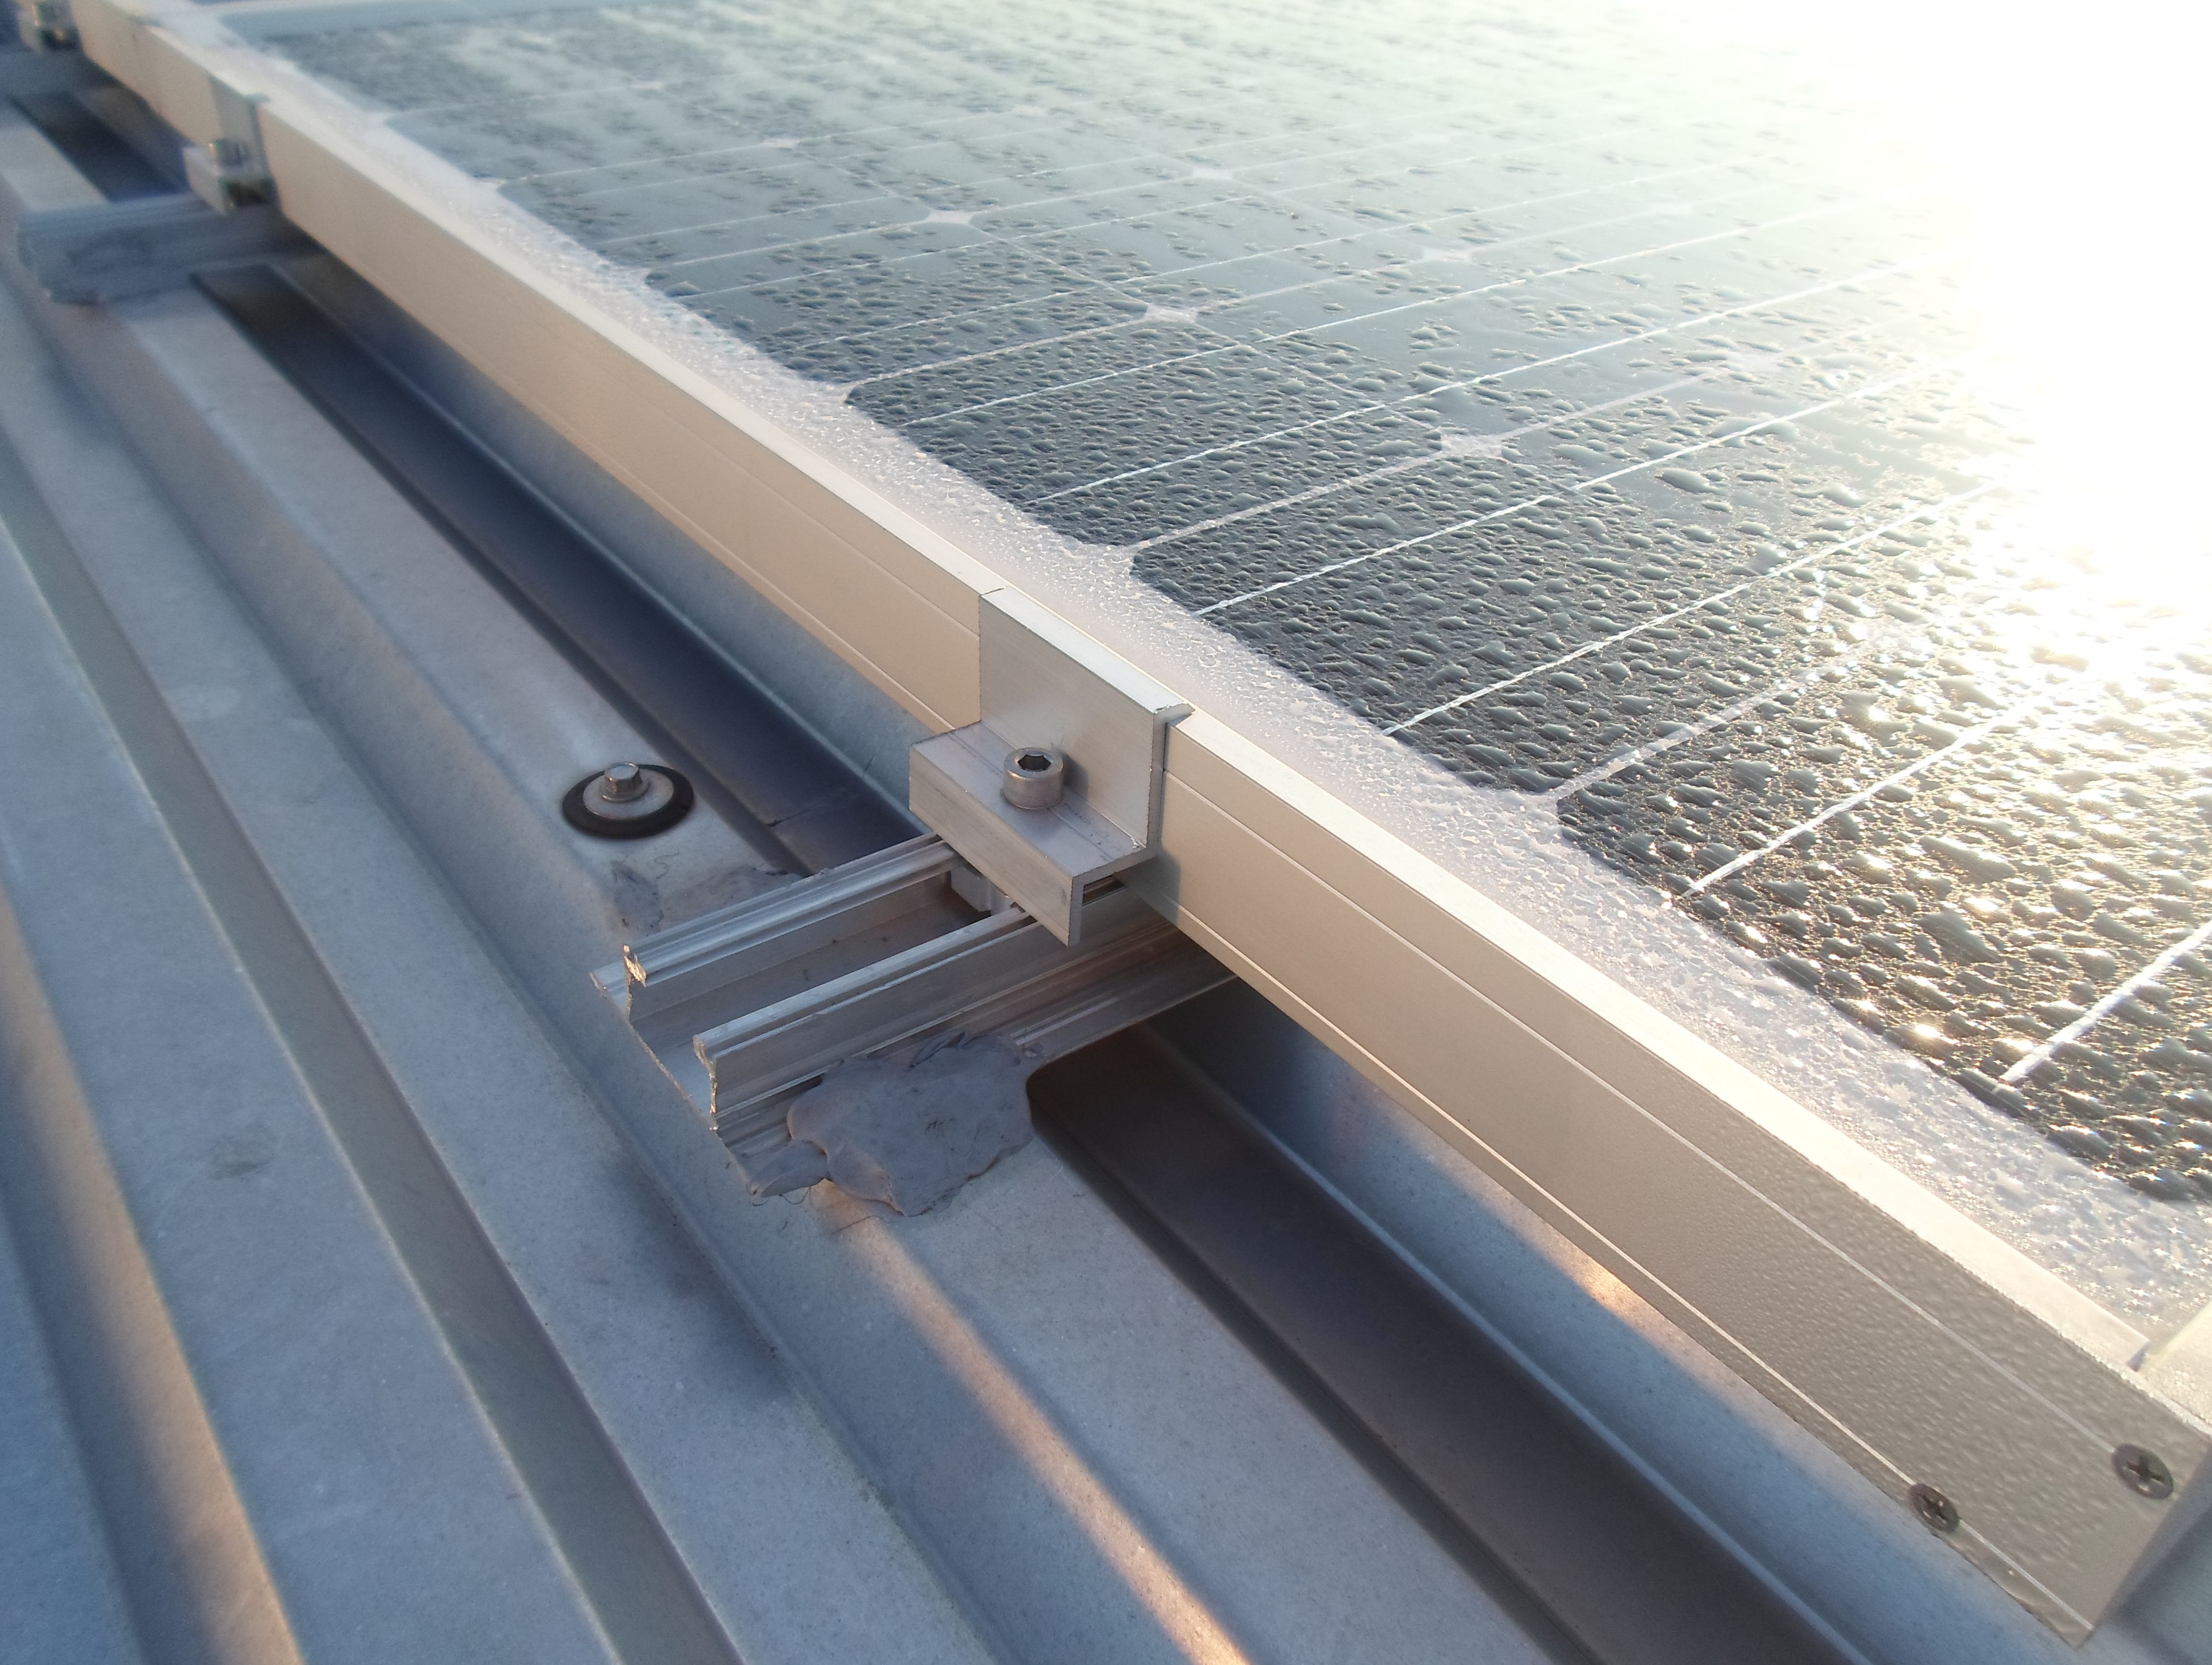 Profilo Fotovoltaico in Alluminio per lamiere